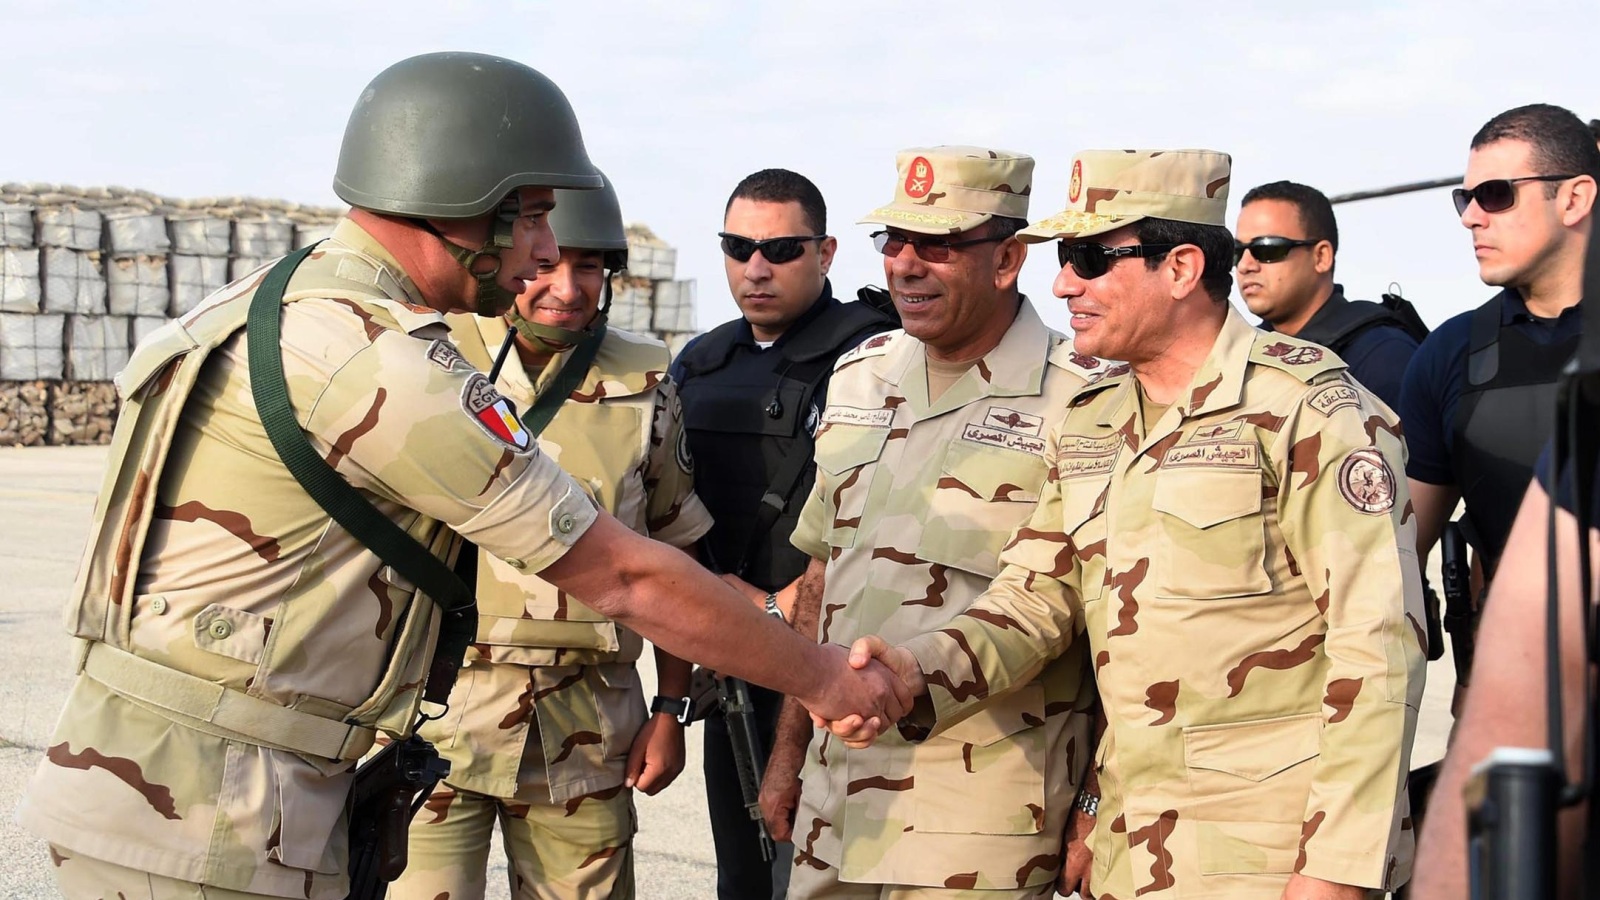 ‪السيسي يتفقد الجيش في شمال سيناء‬ (الأوروبية-أرشيف)